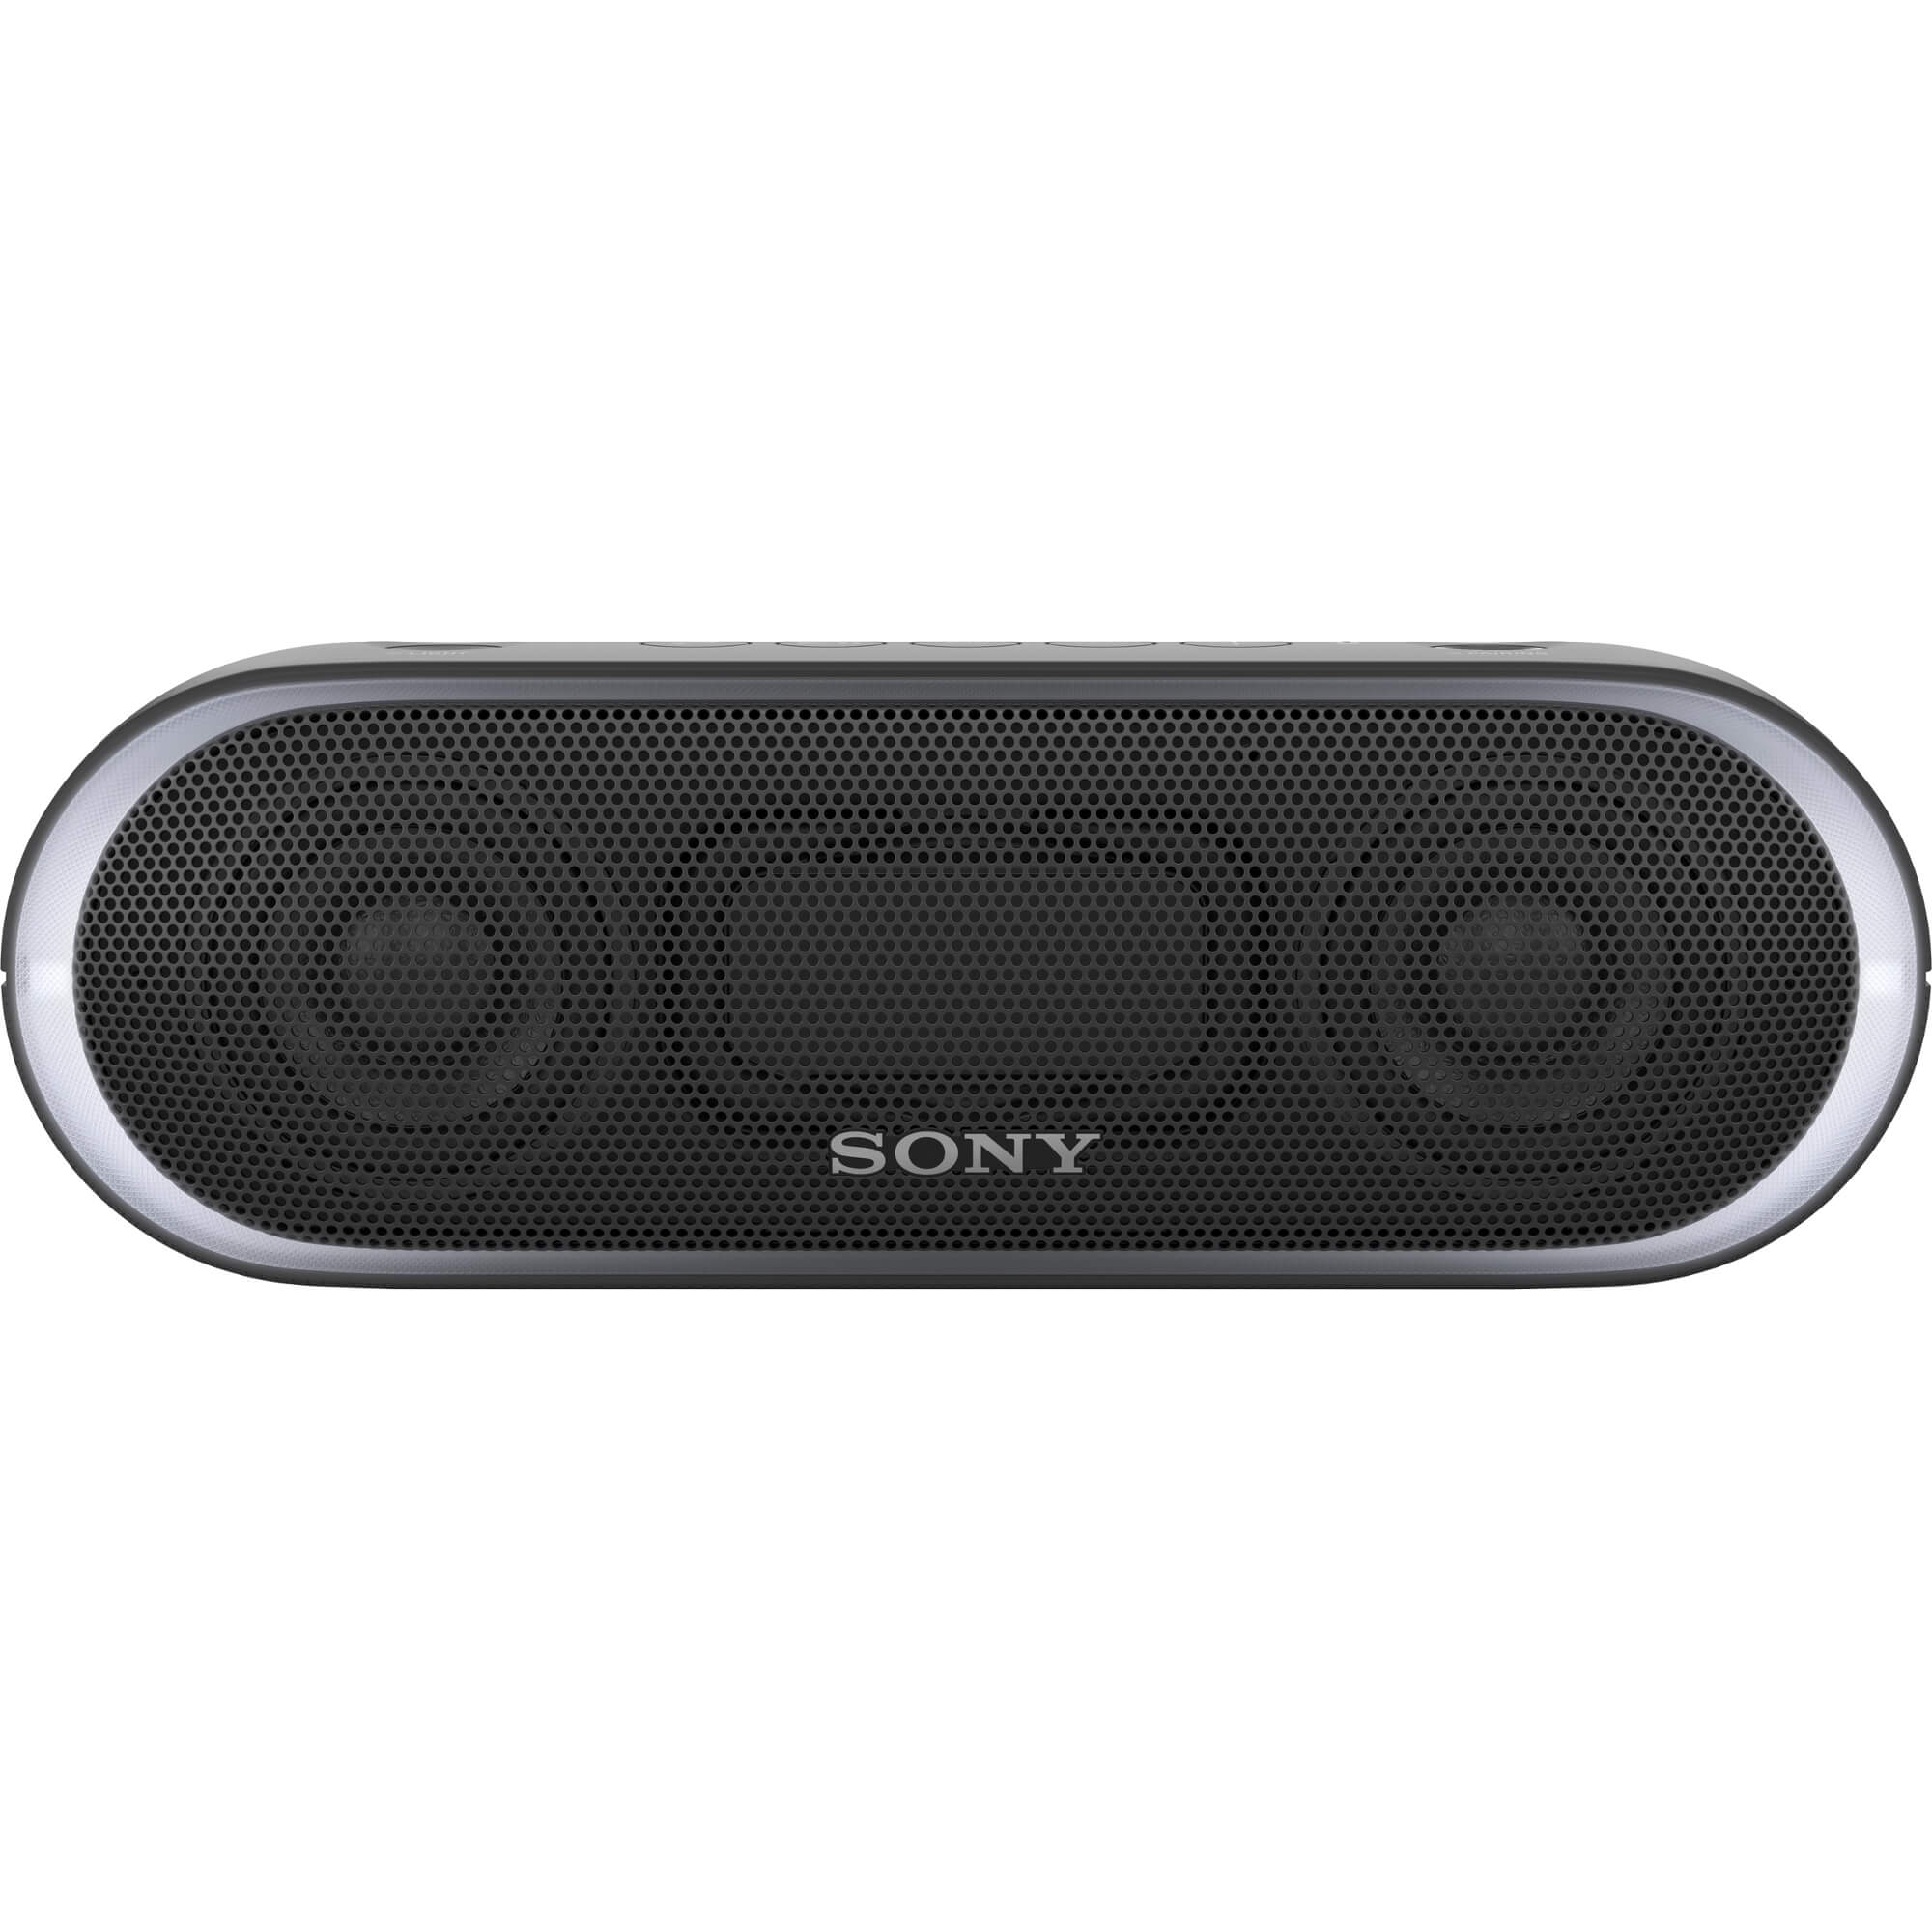  Boxa portabila Sony SRSXB20B.CE7, Bluetooth, Negru 